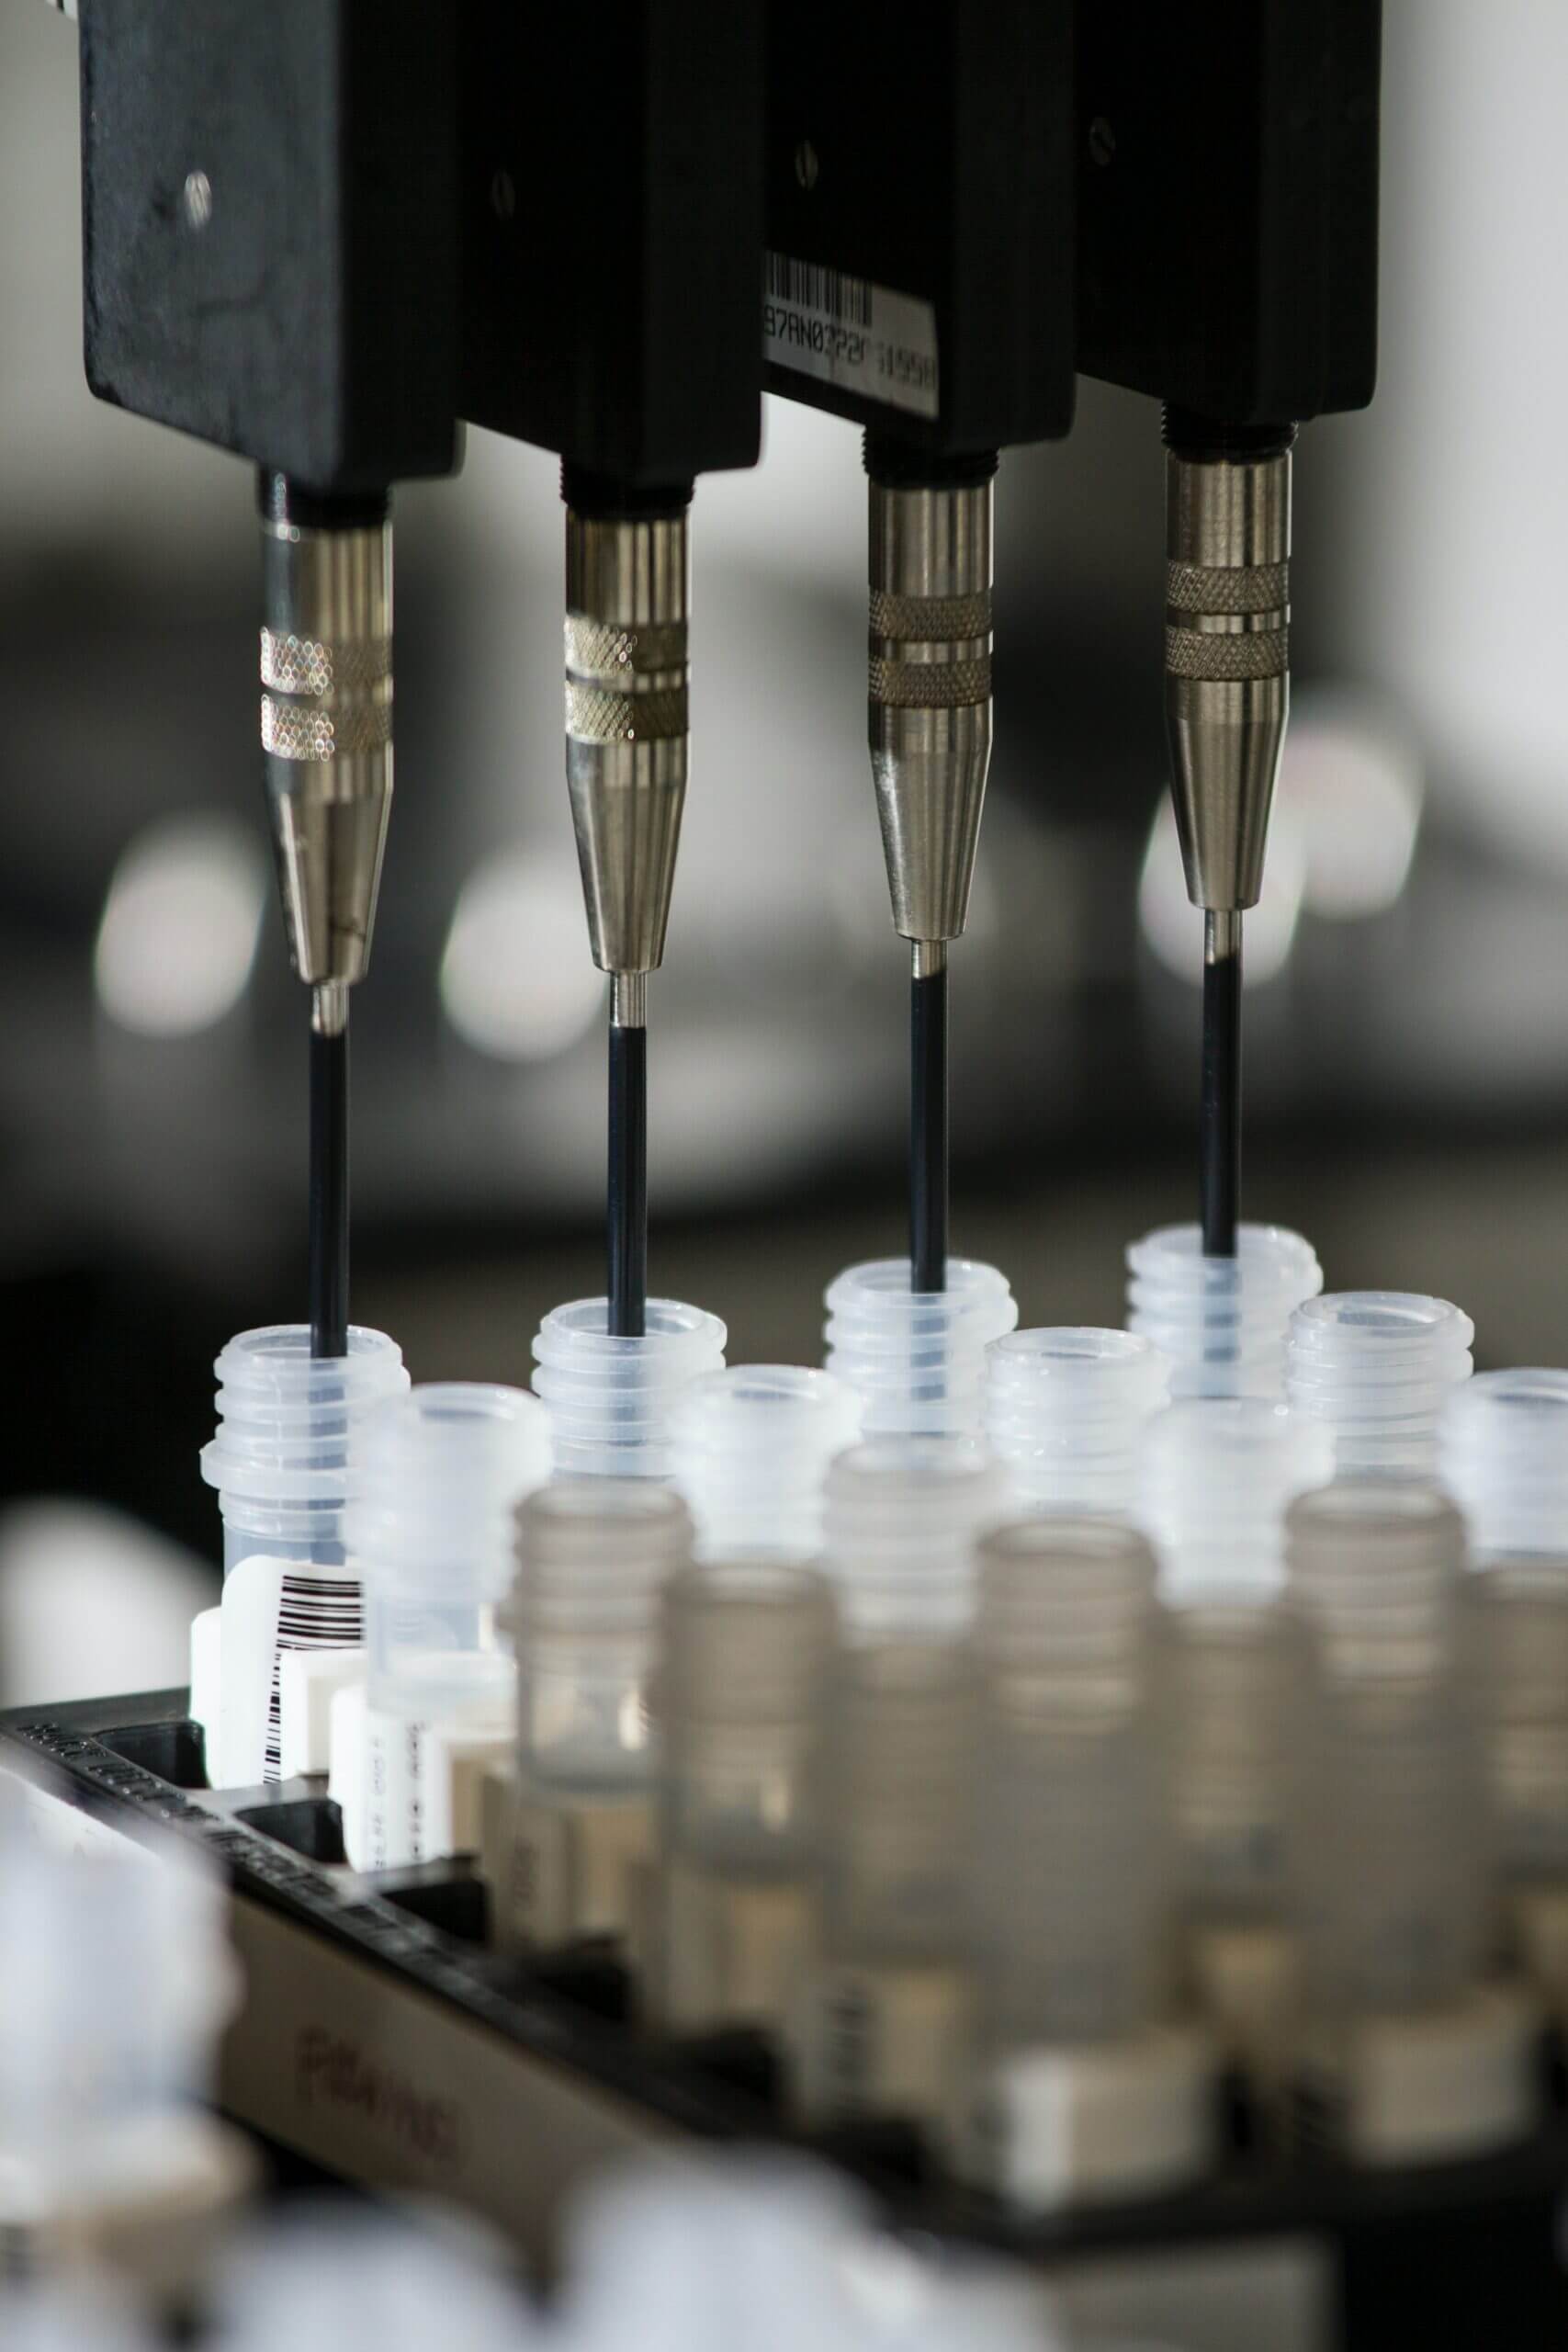 Laboratory automatic pipette machine aliquoting diagnostic samples